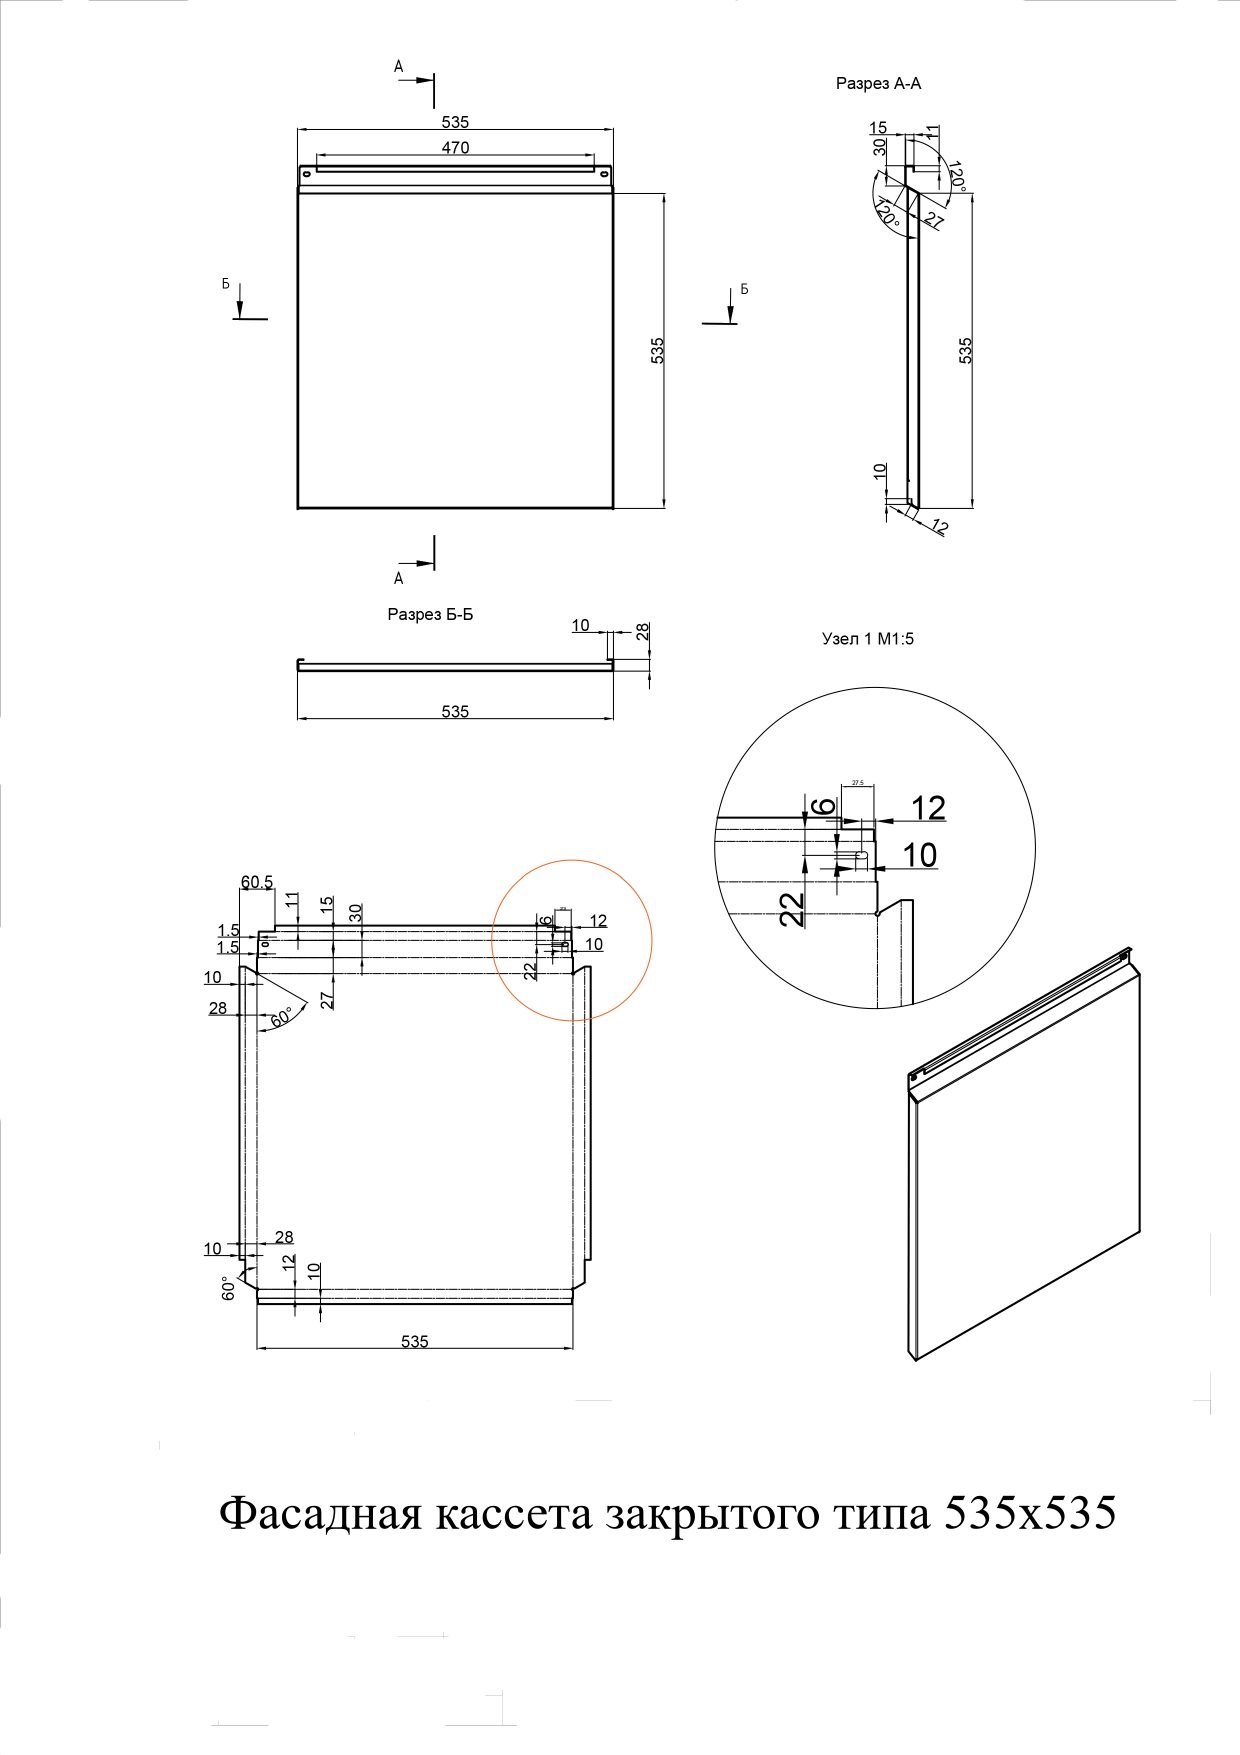 Фасадные кассеты закрытого типа из оцинкованной стали с полимерным покрытием 535х535, 1,2 мм - чертеж